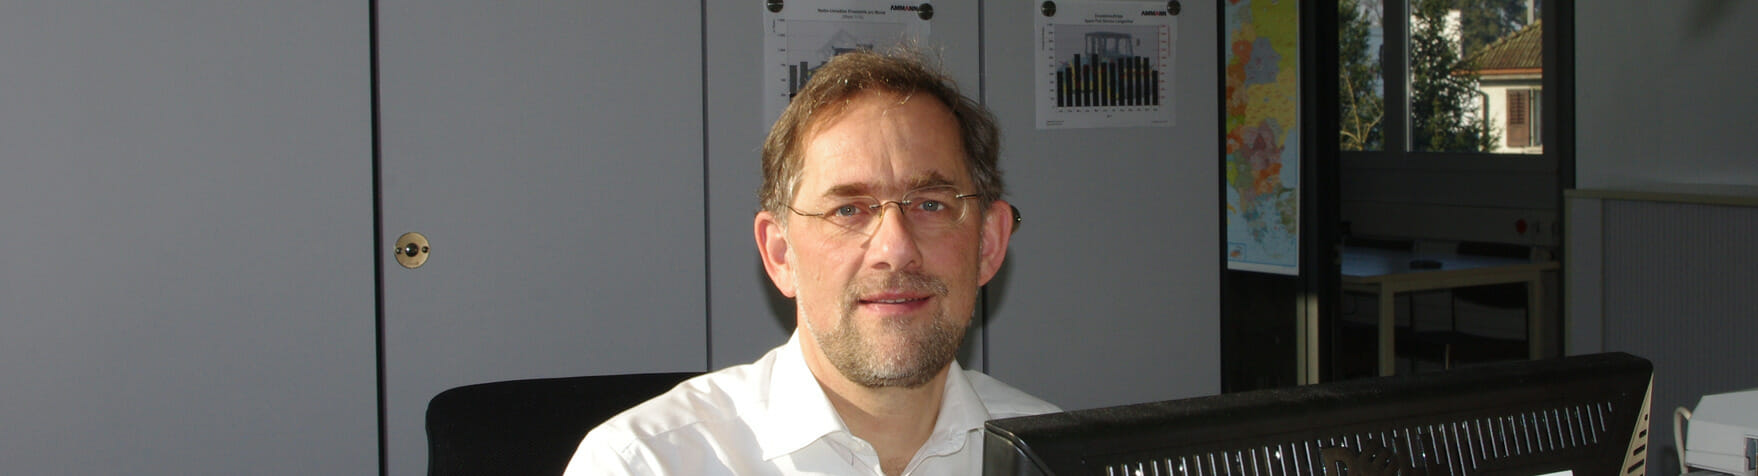 Andreas Noll: der auf Ersatzteile spezialisierte Managementberater